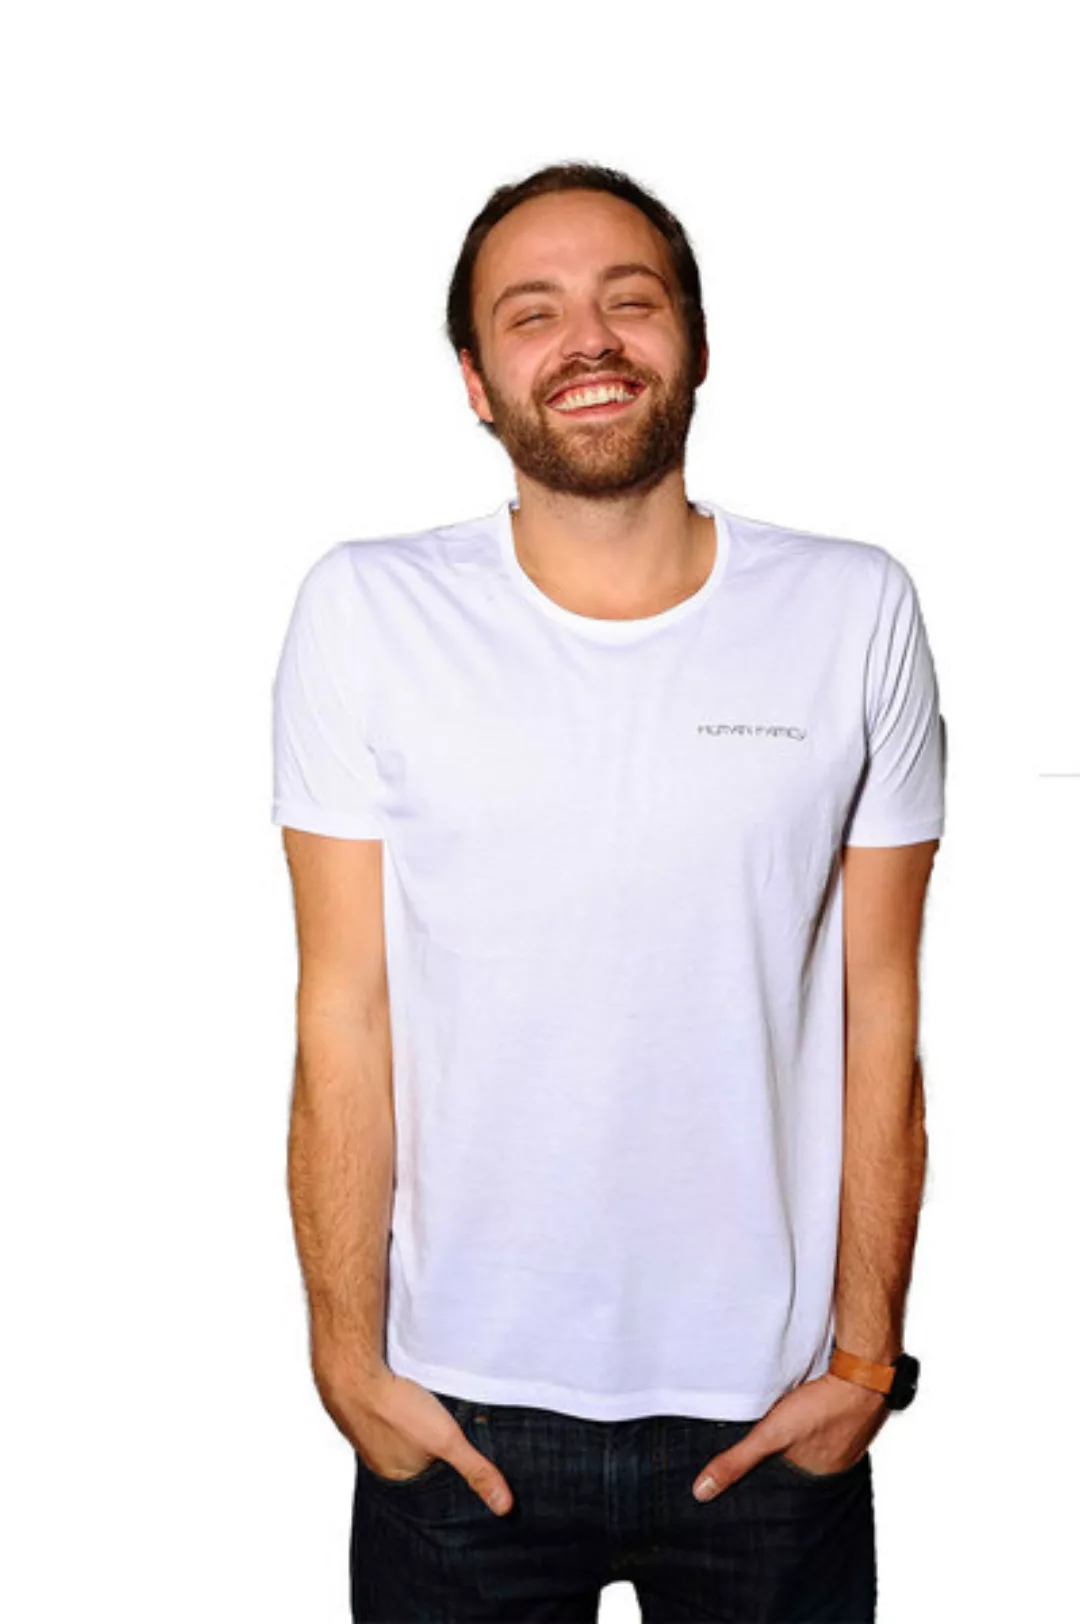 Öko T-shirt Von "Change Basic" günstig online kaufen